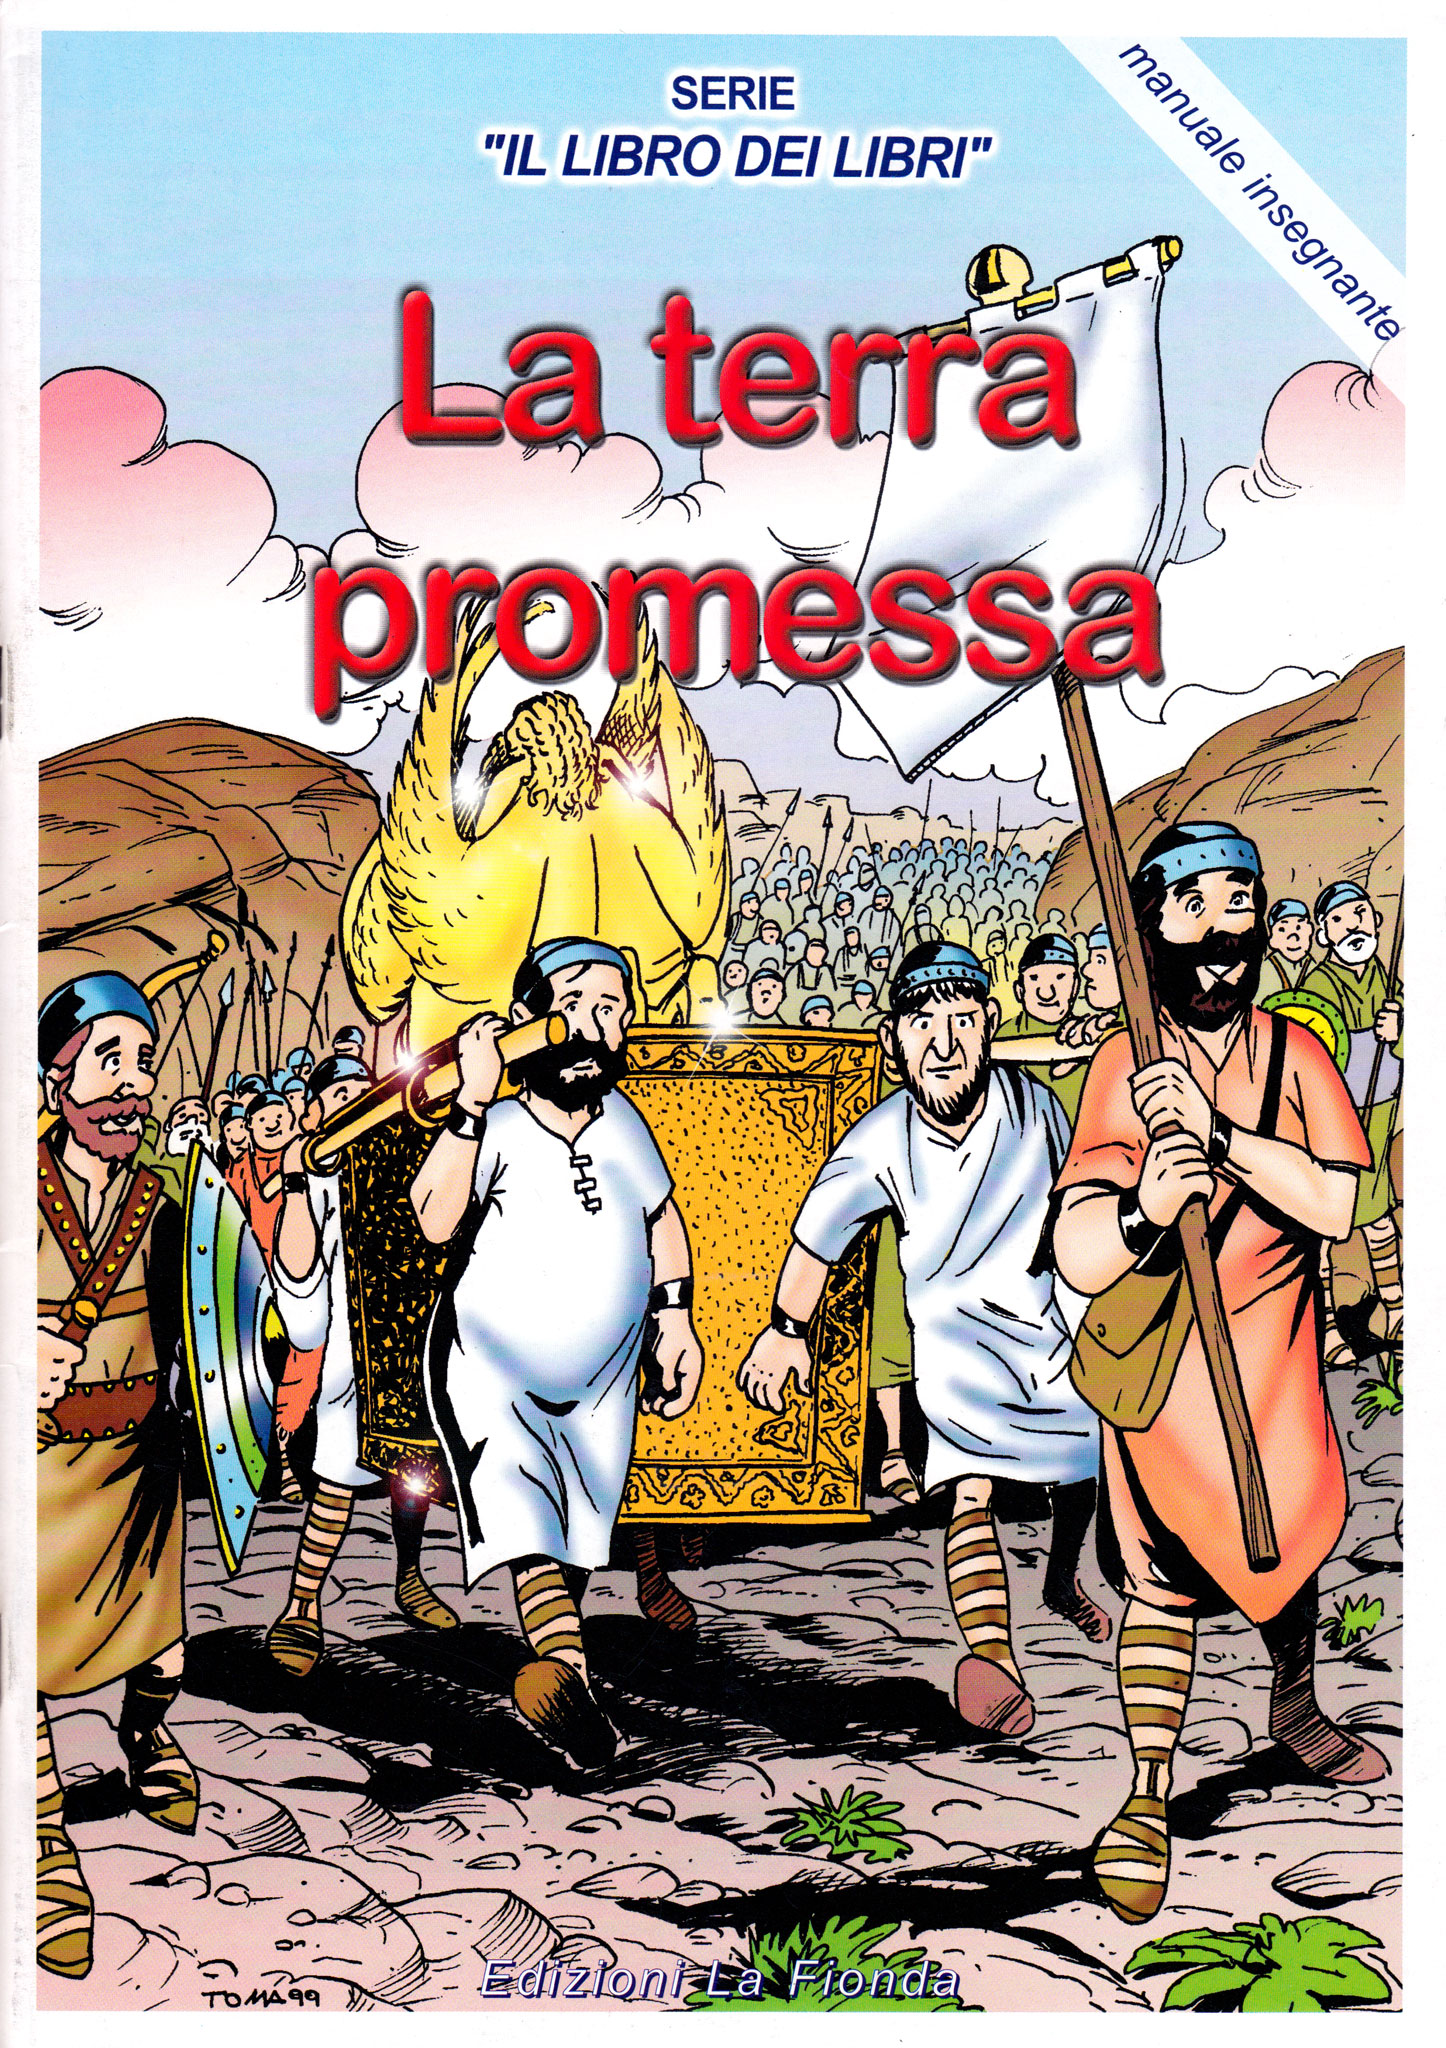 La terra promessa - Serie "Il Libro dei Libri" n° 3 Manuale Insegnante